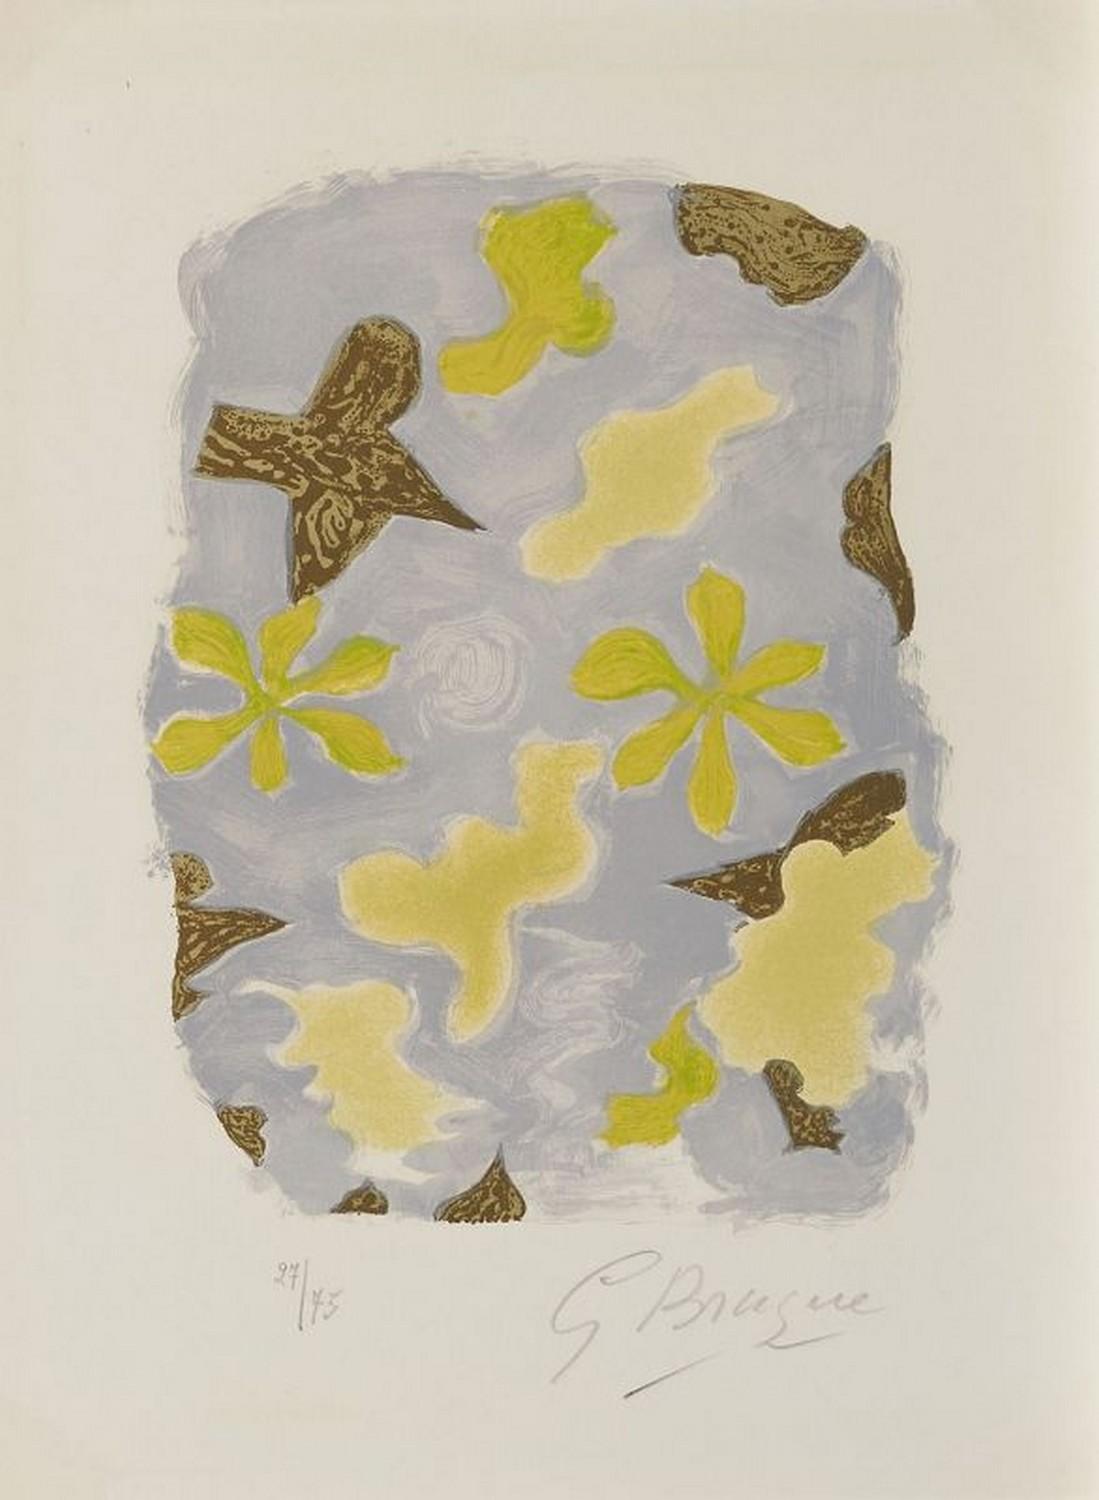 Georges Braque Abstract Print - La Sorgue 